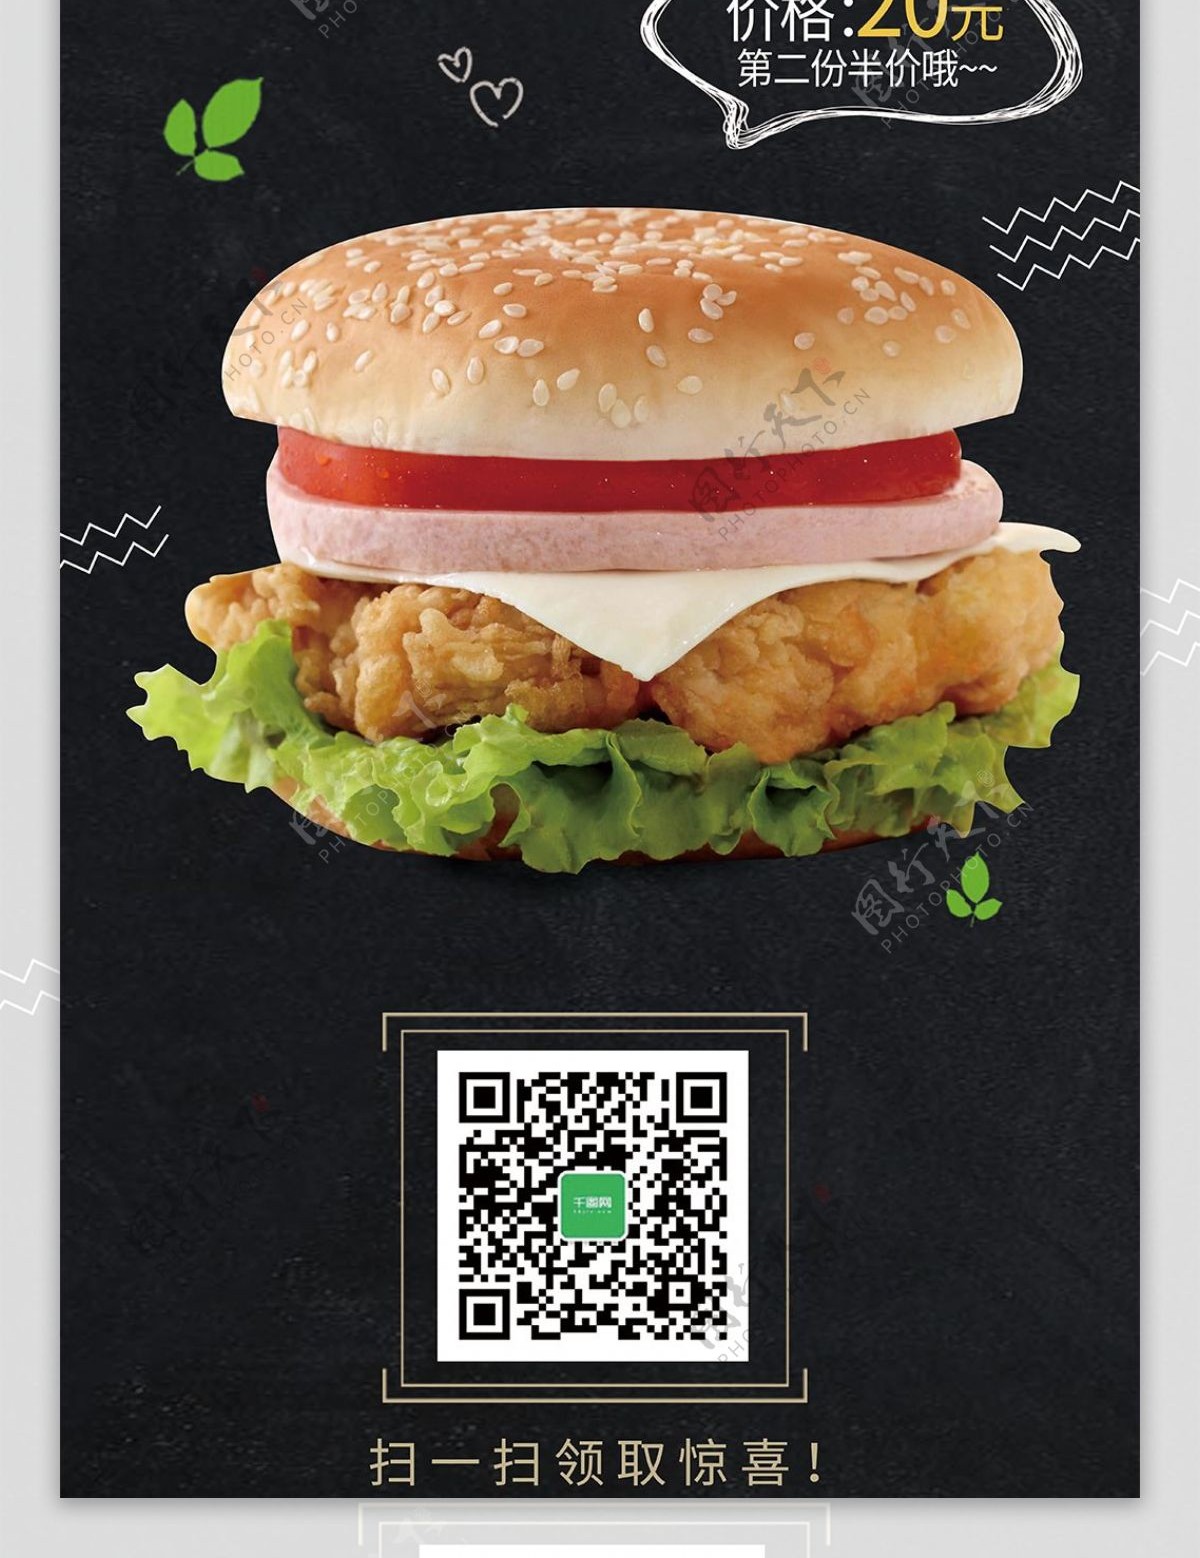 黑色简约美味汉堡美食促销展架海报